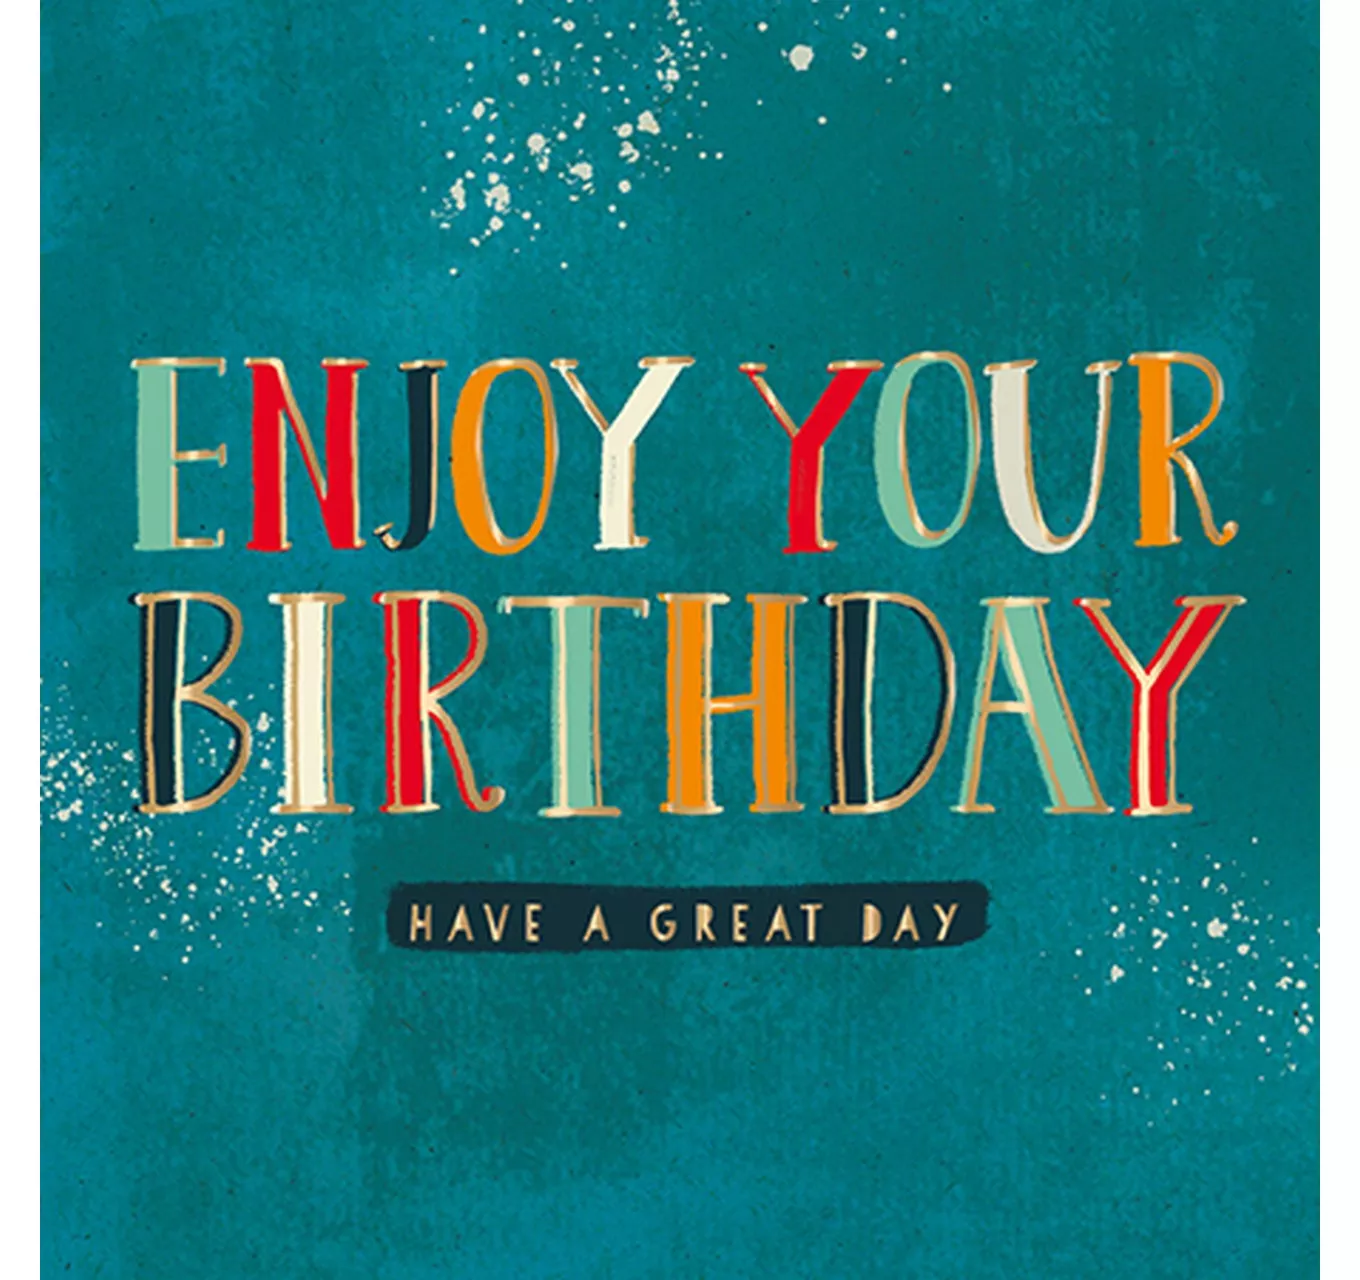 Birthday Card - Enjoy Your Birthday